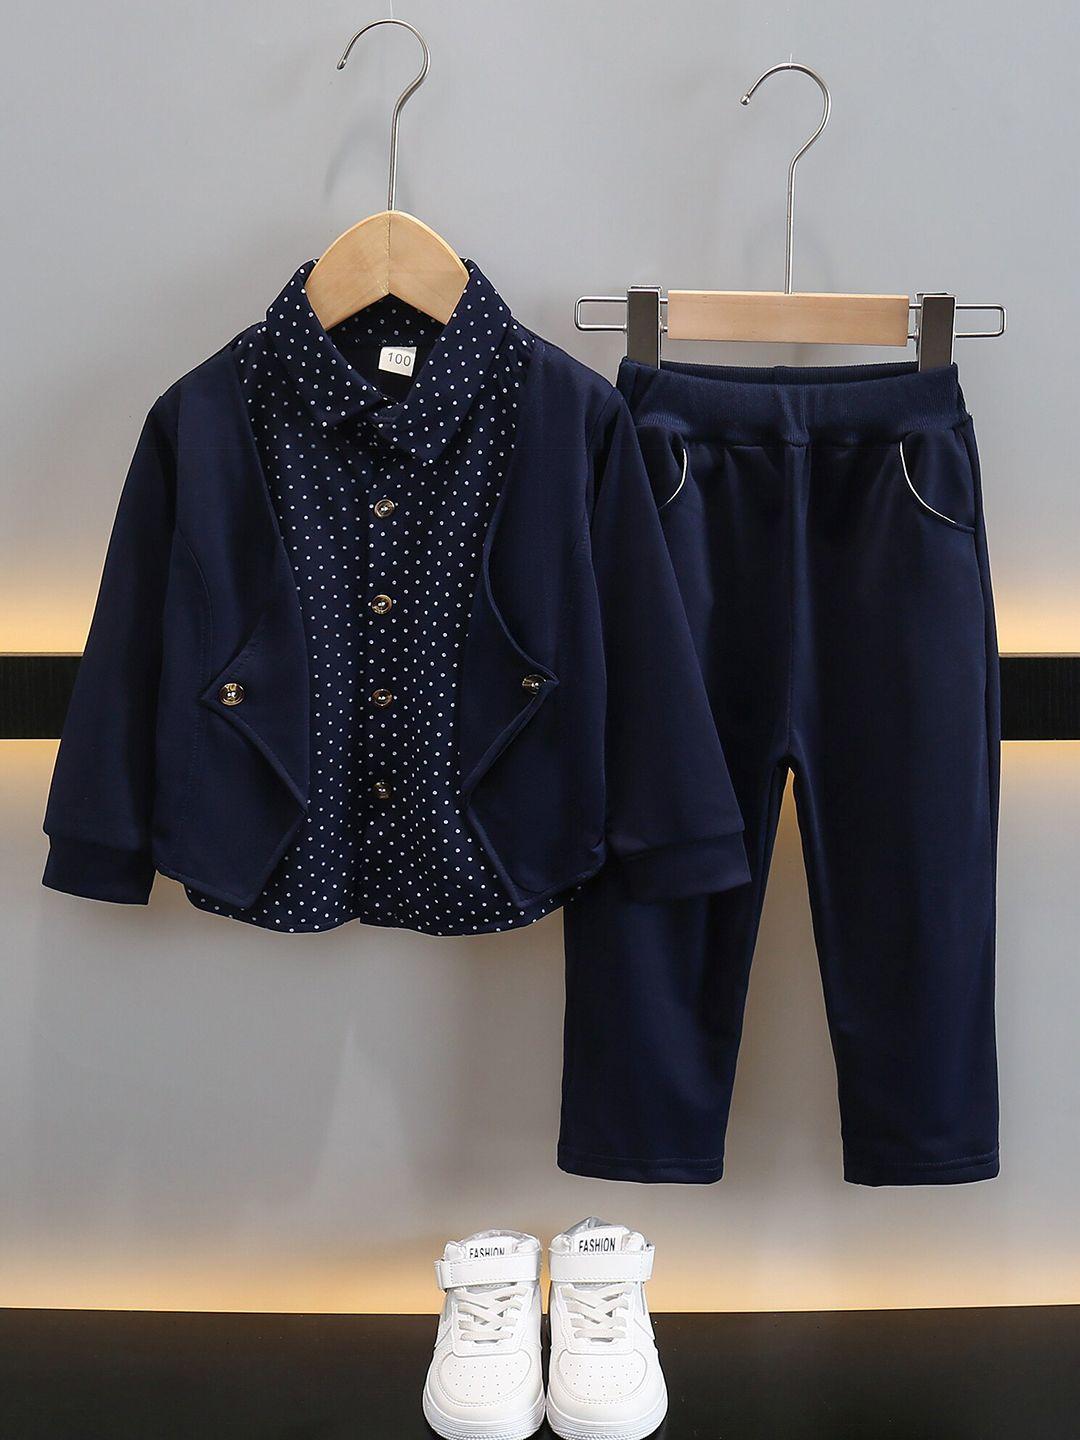 stylecast boys navy blue printed shirt with pyjamas